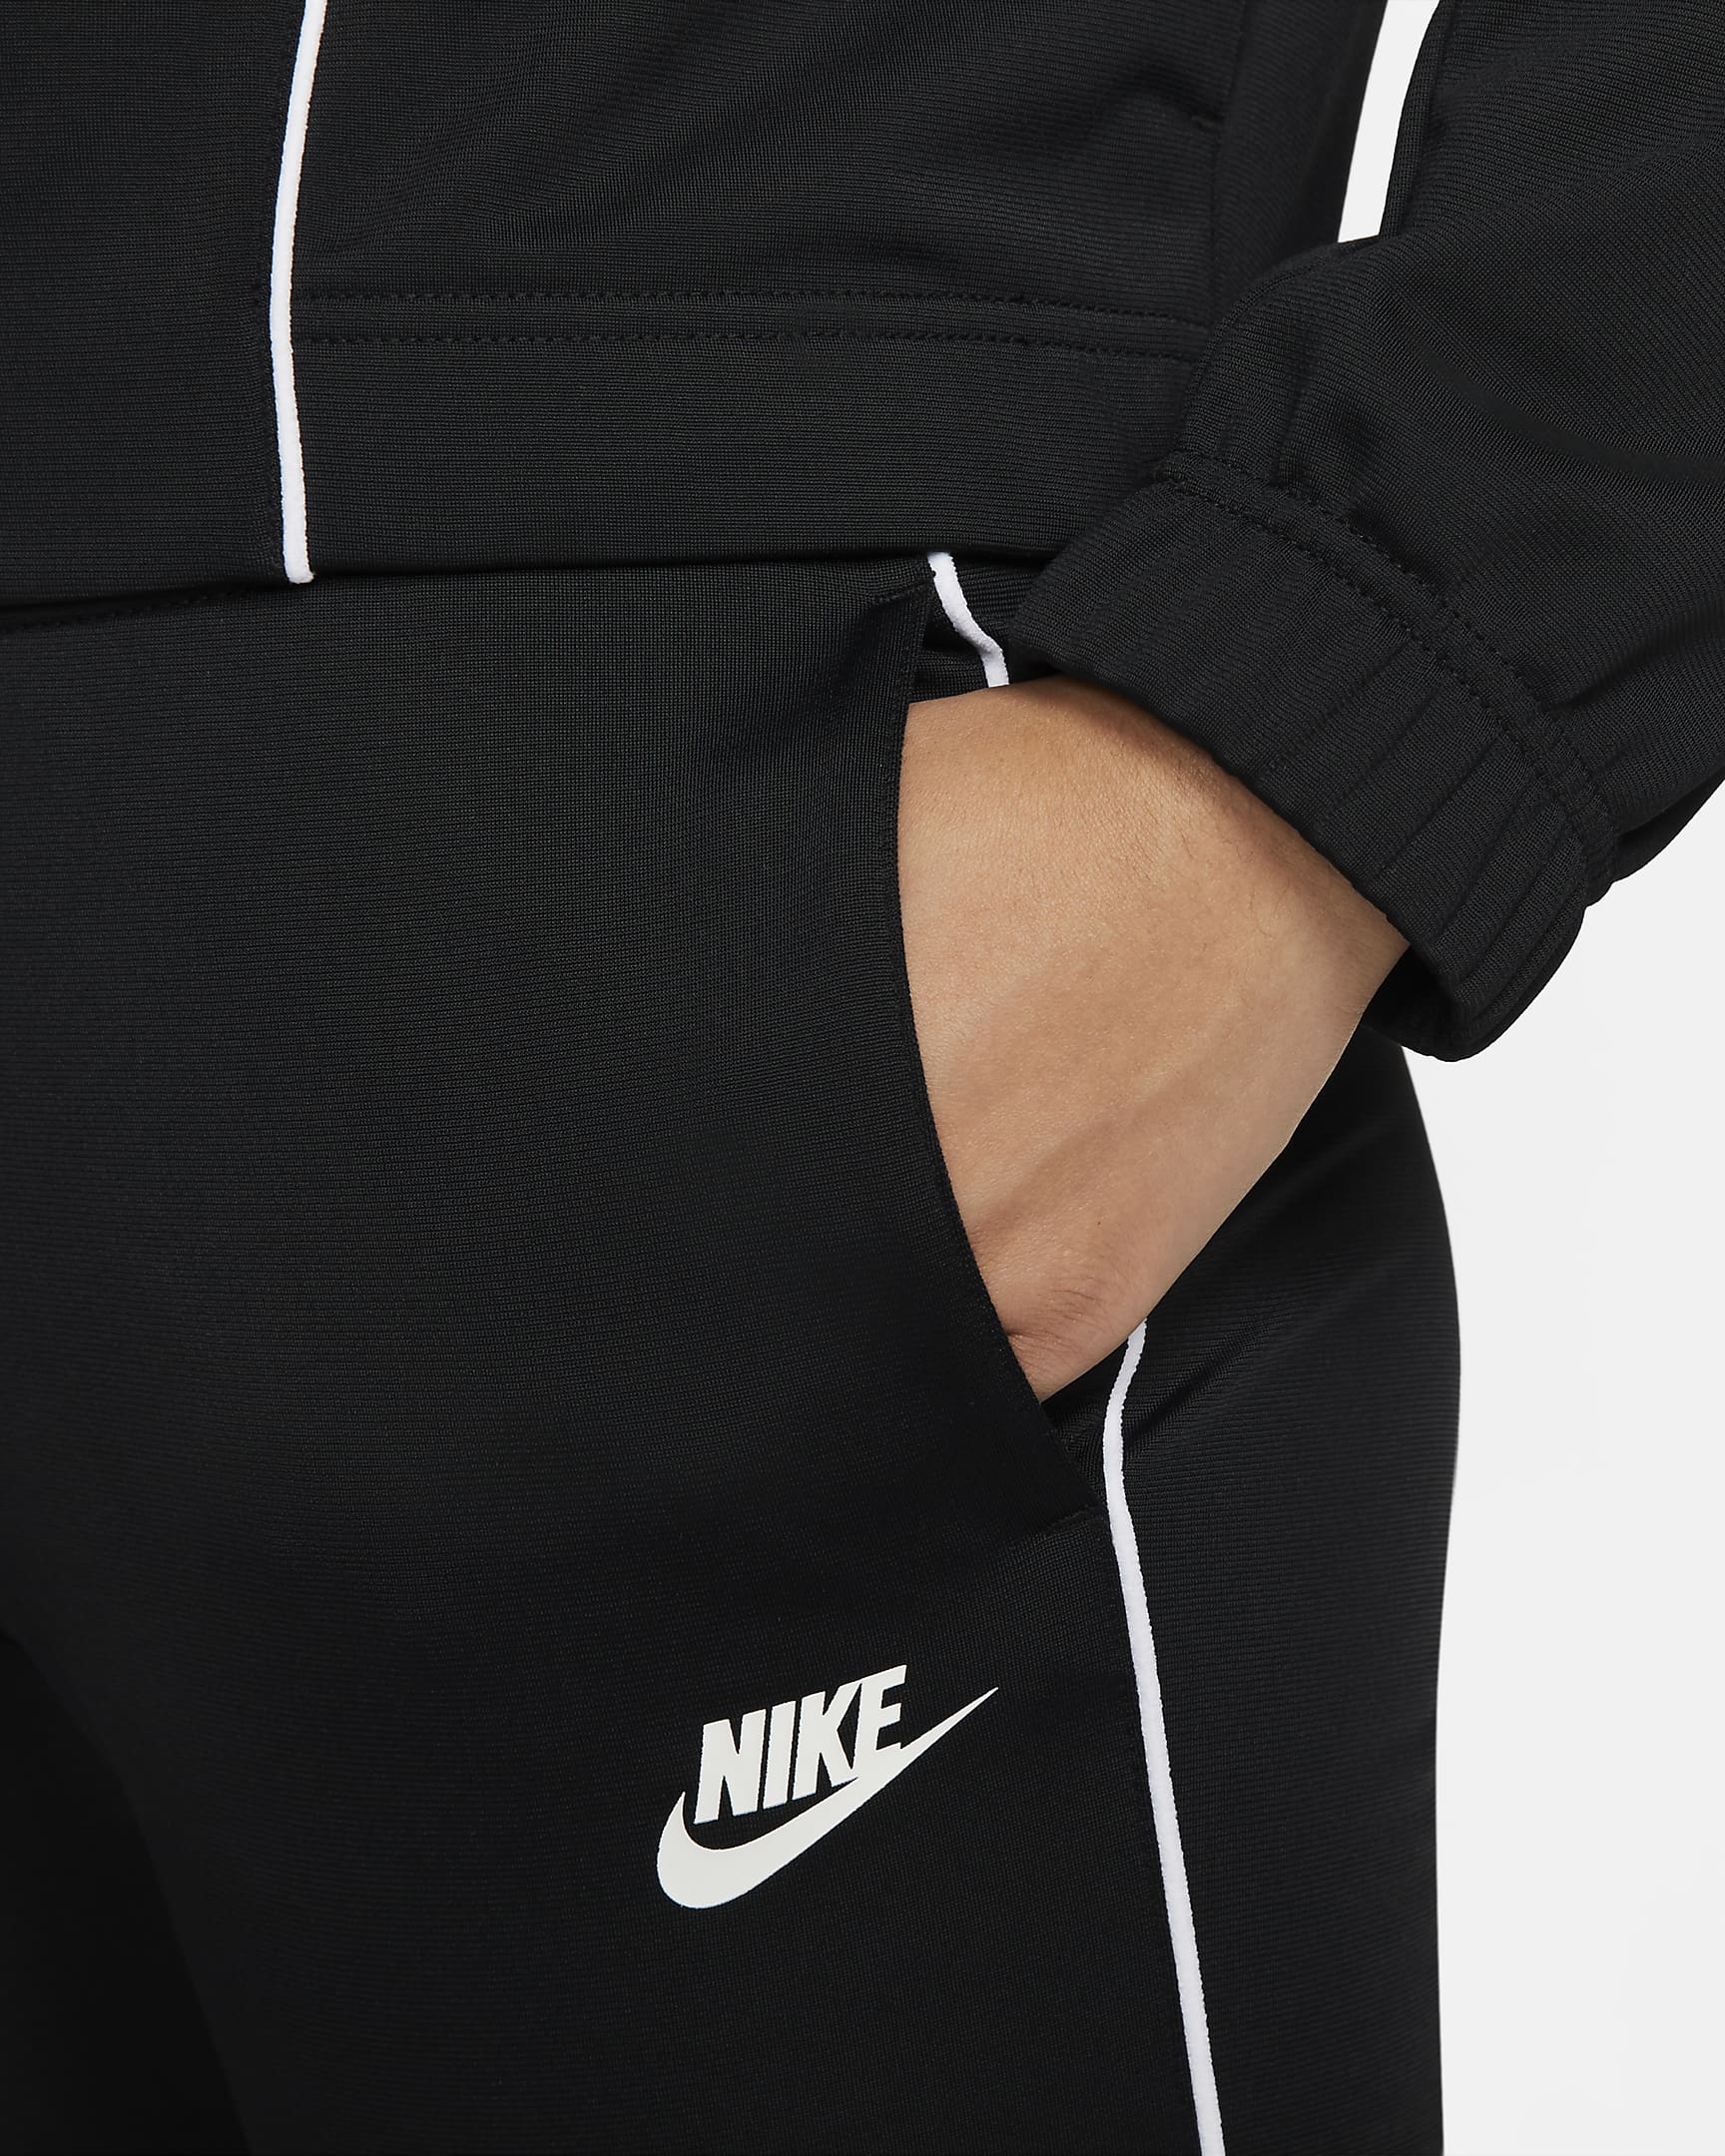 Nike Sportswear Women's Fitted Track Suit. Nike JP